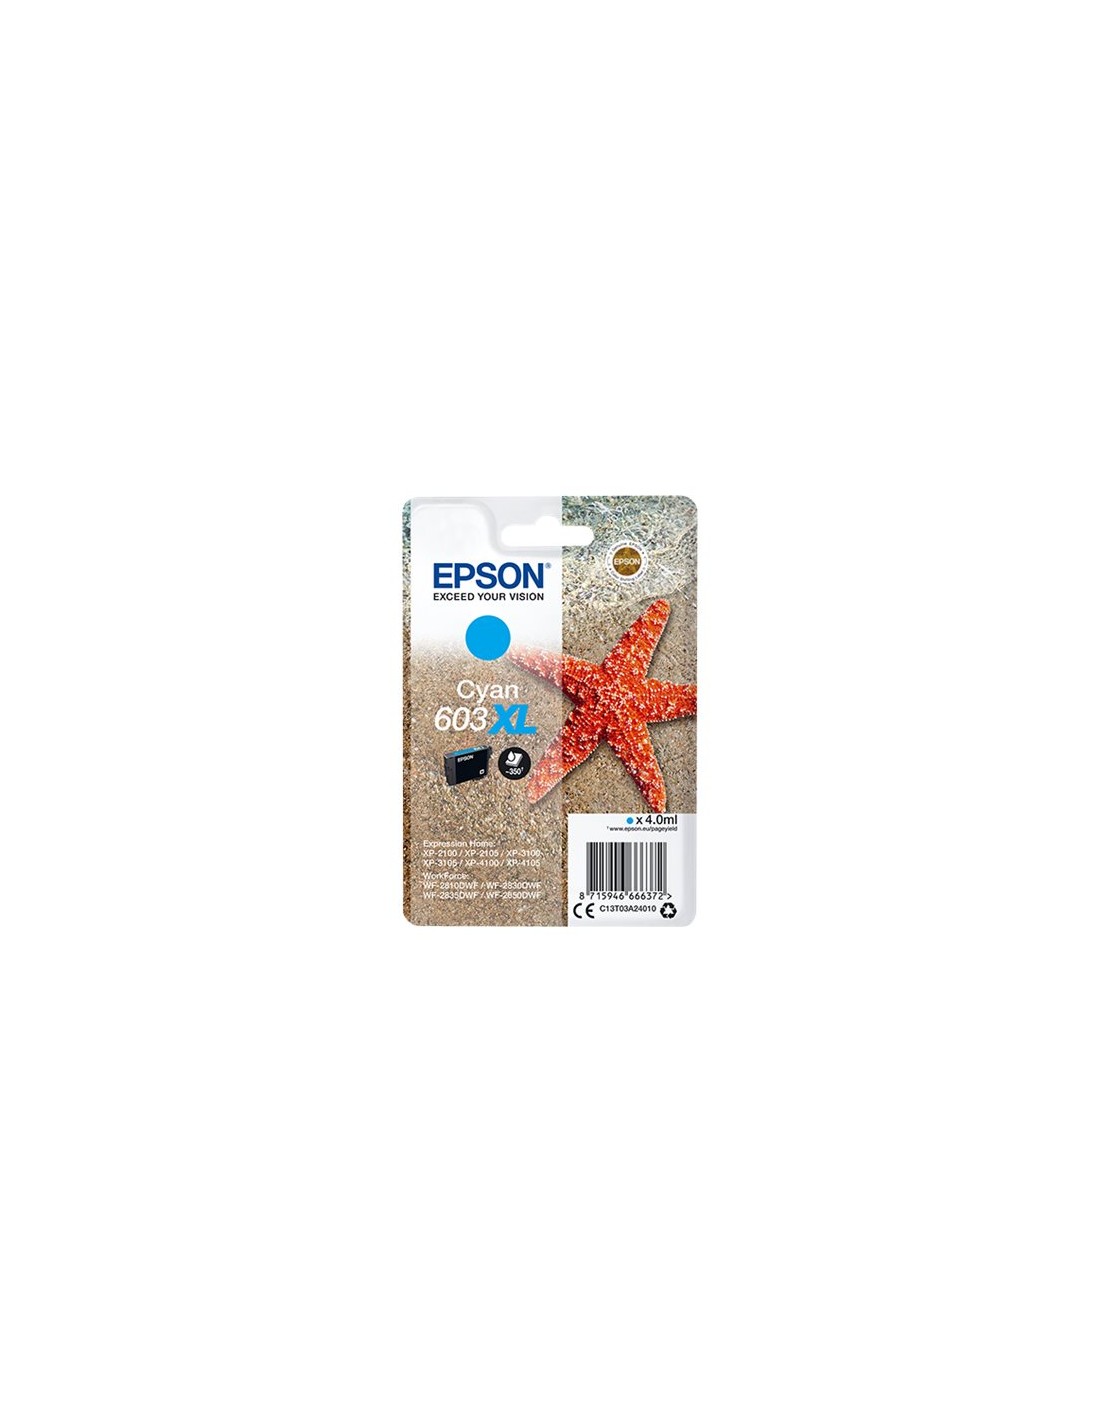 ESPACE BURO  CARTOUCHE ENCRE EPSON 603 XP-2100 / 3100 / 4100 / WF